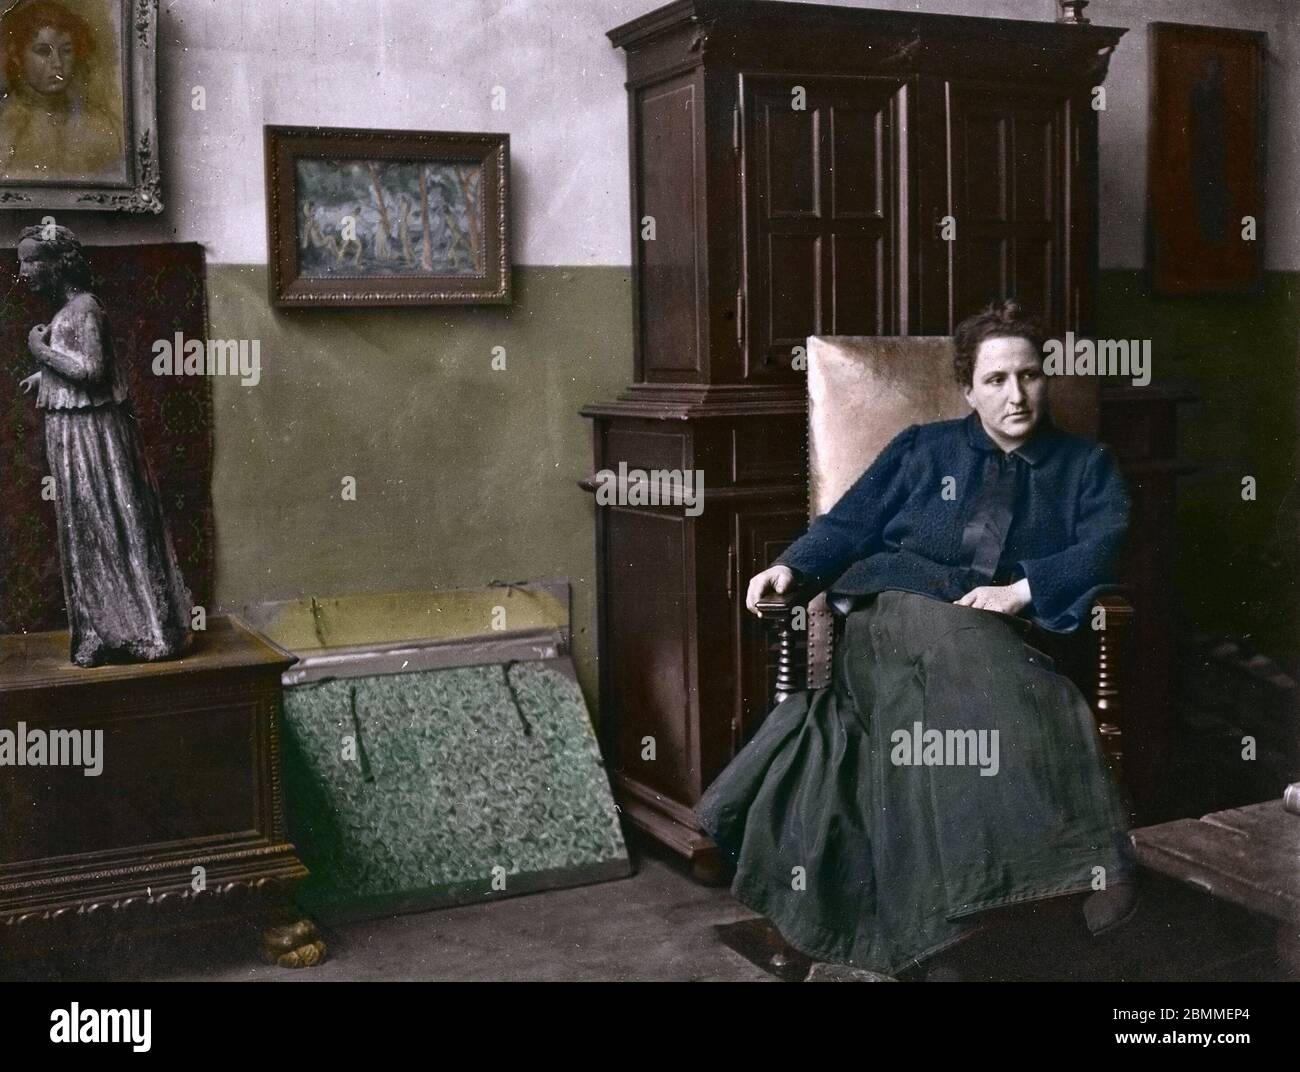 Portrait de Gertrude Stein (1874-1946) poetesse, ecrivain,   et feministe americaine, collectionneuse d'art qui contribua a la diffusion de mouvements Stock Photo